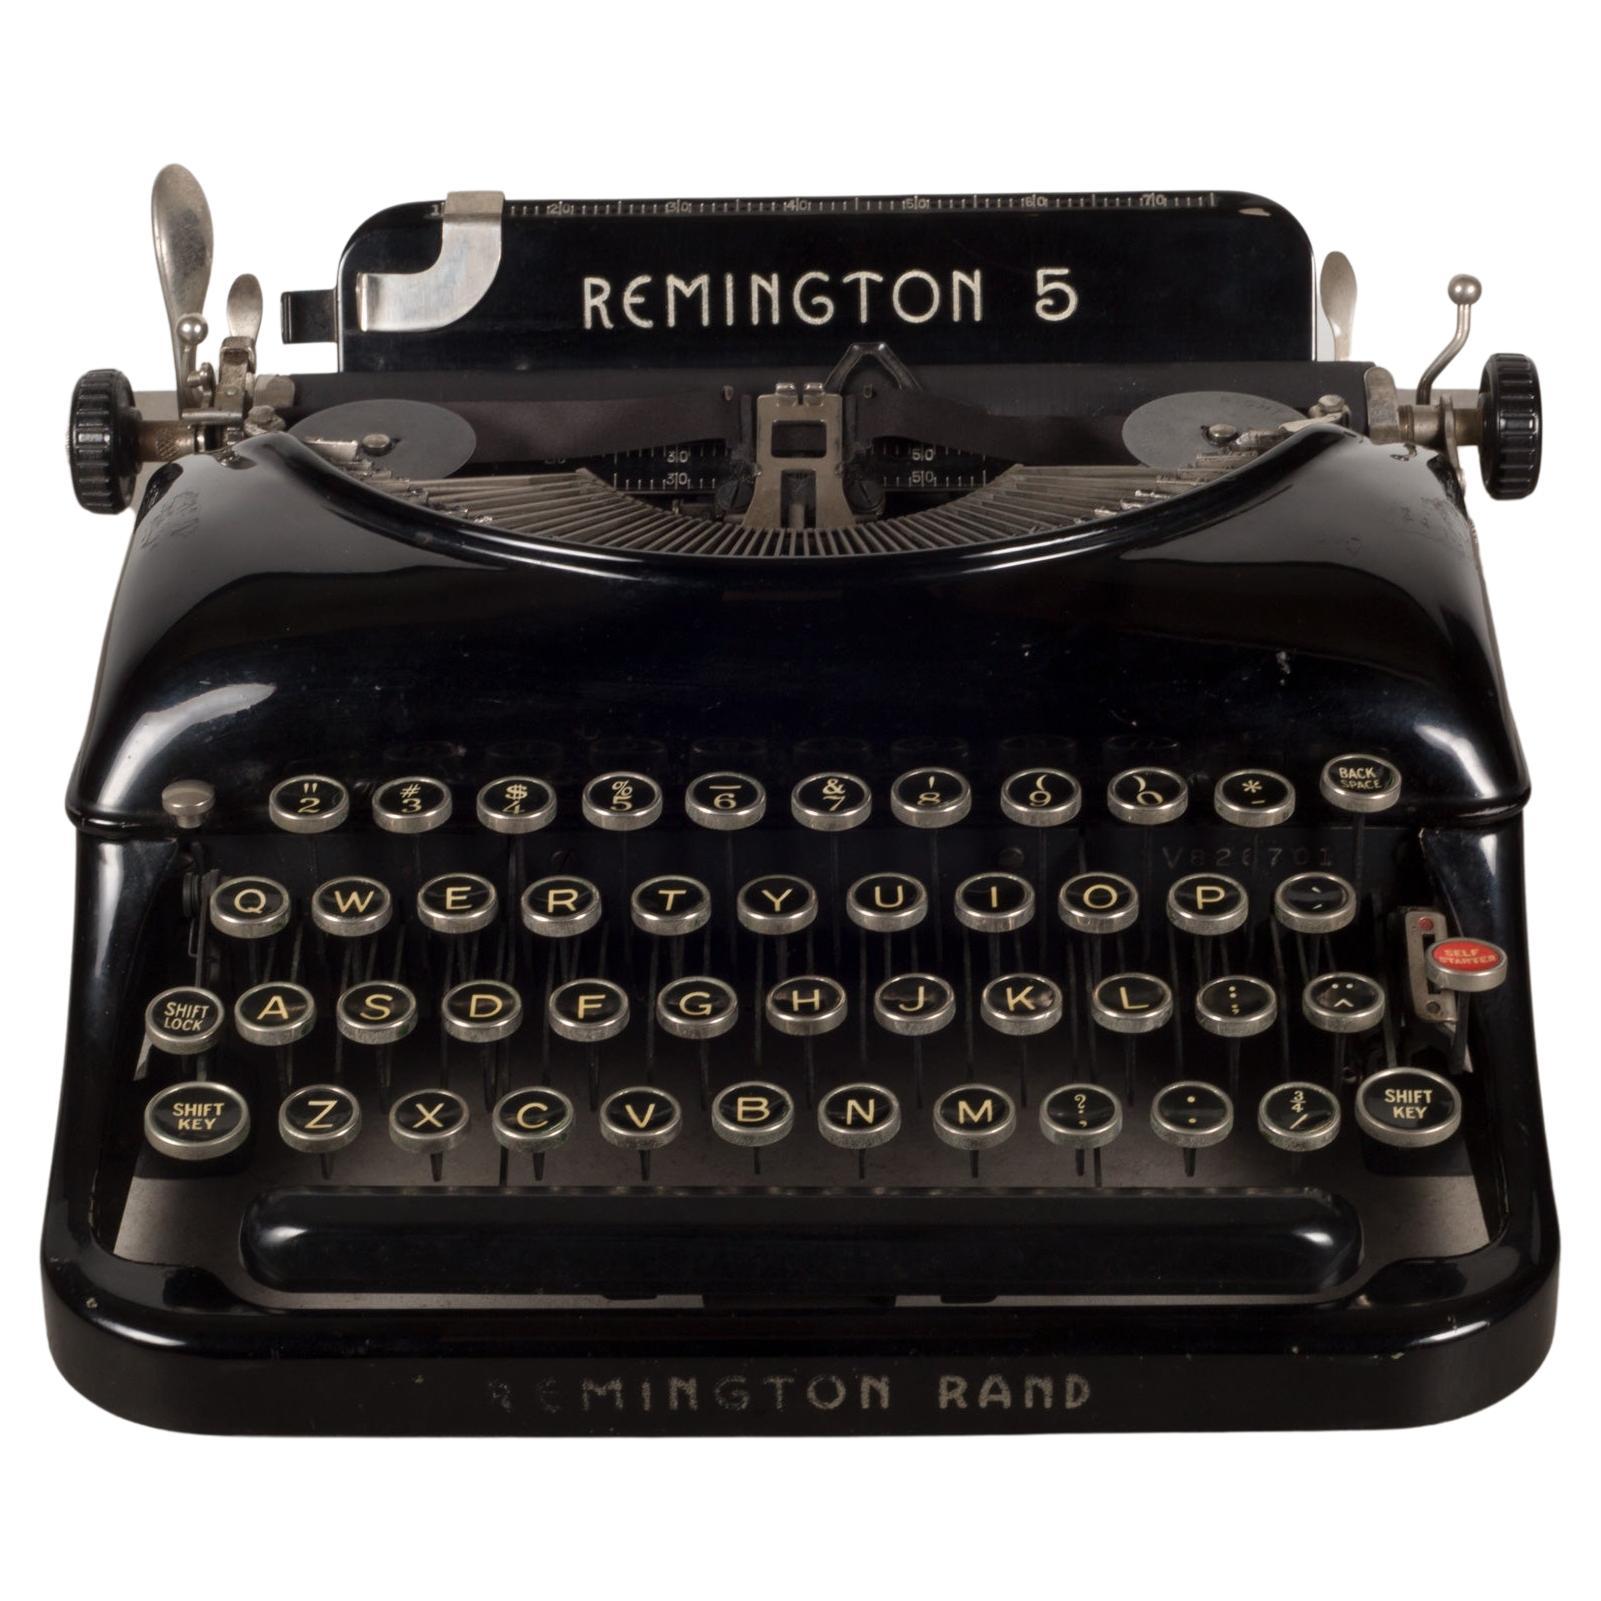 Antique Refurbished Art Deco Remington 5 Typewriter C.1935